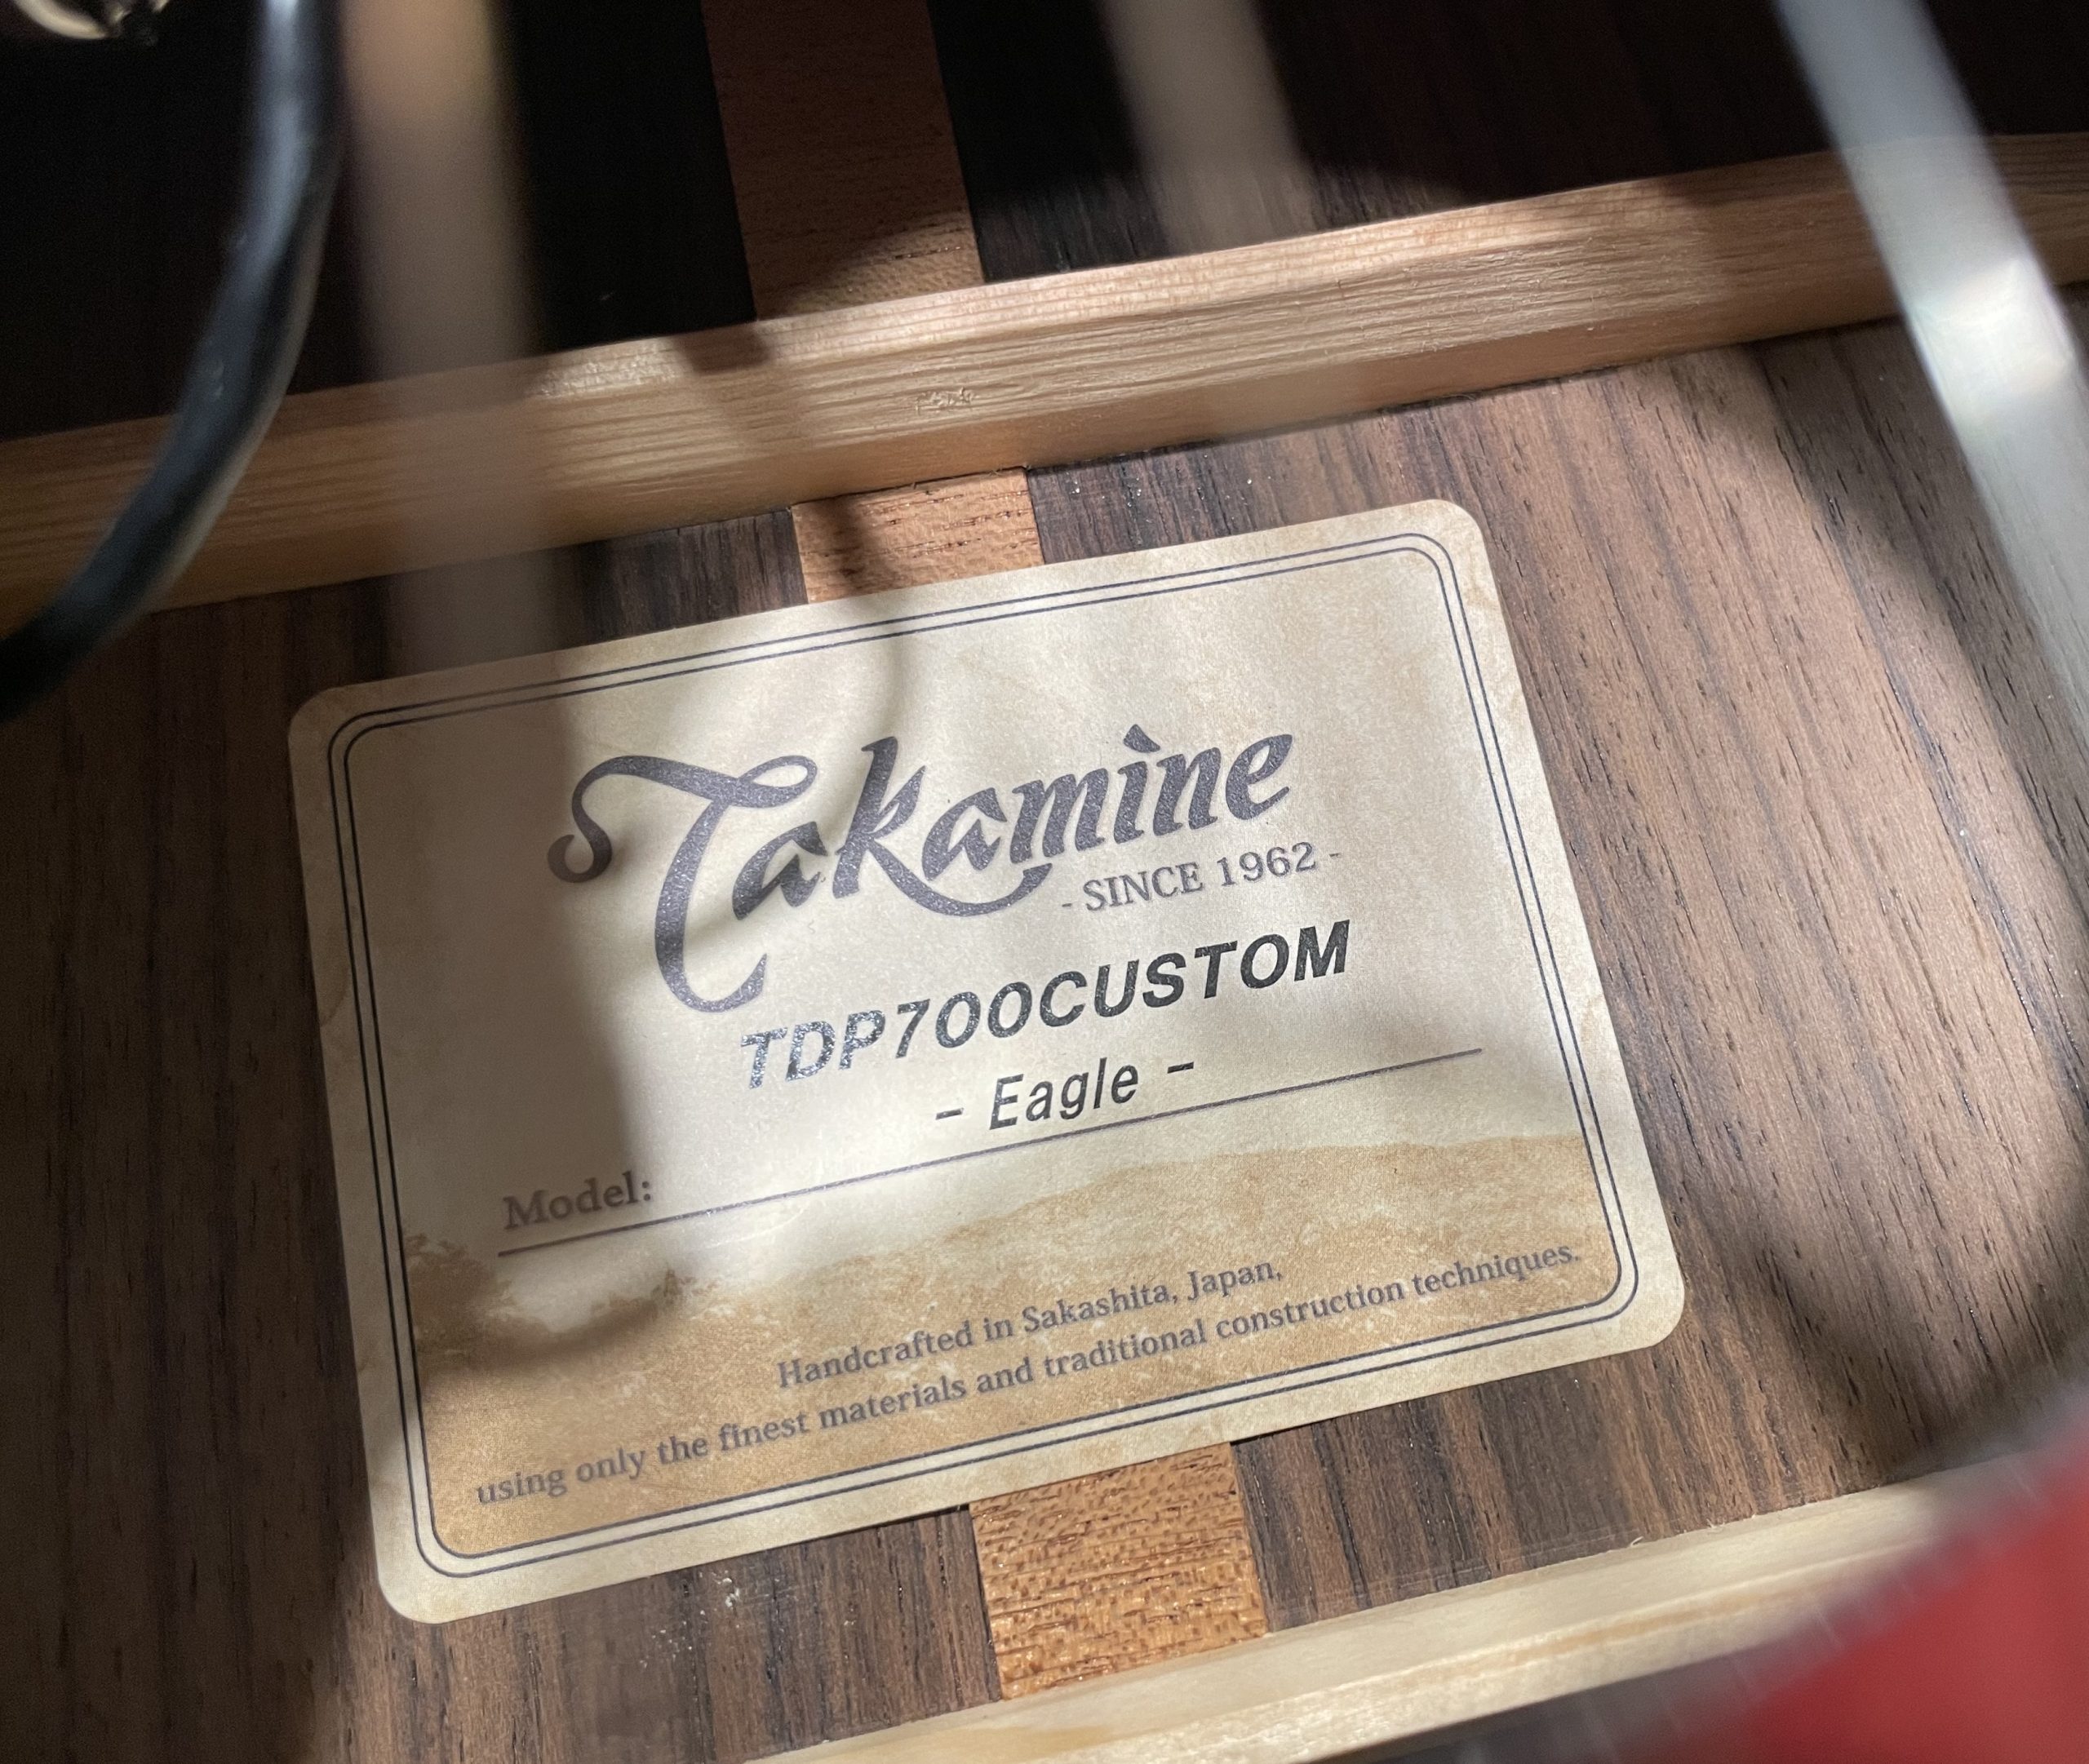 11本限定モデル”Takamine TDP700CUSTOM -Eagle-の魅力に迫る 